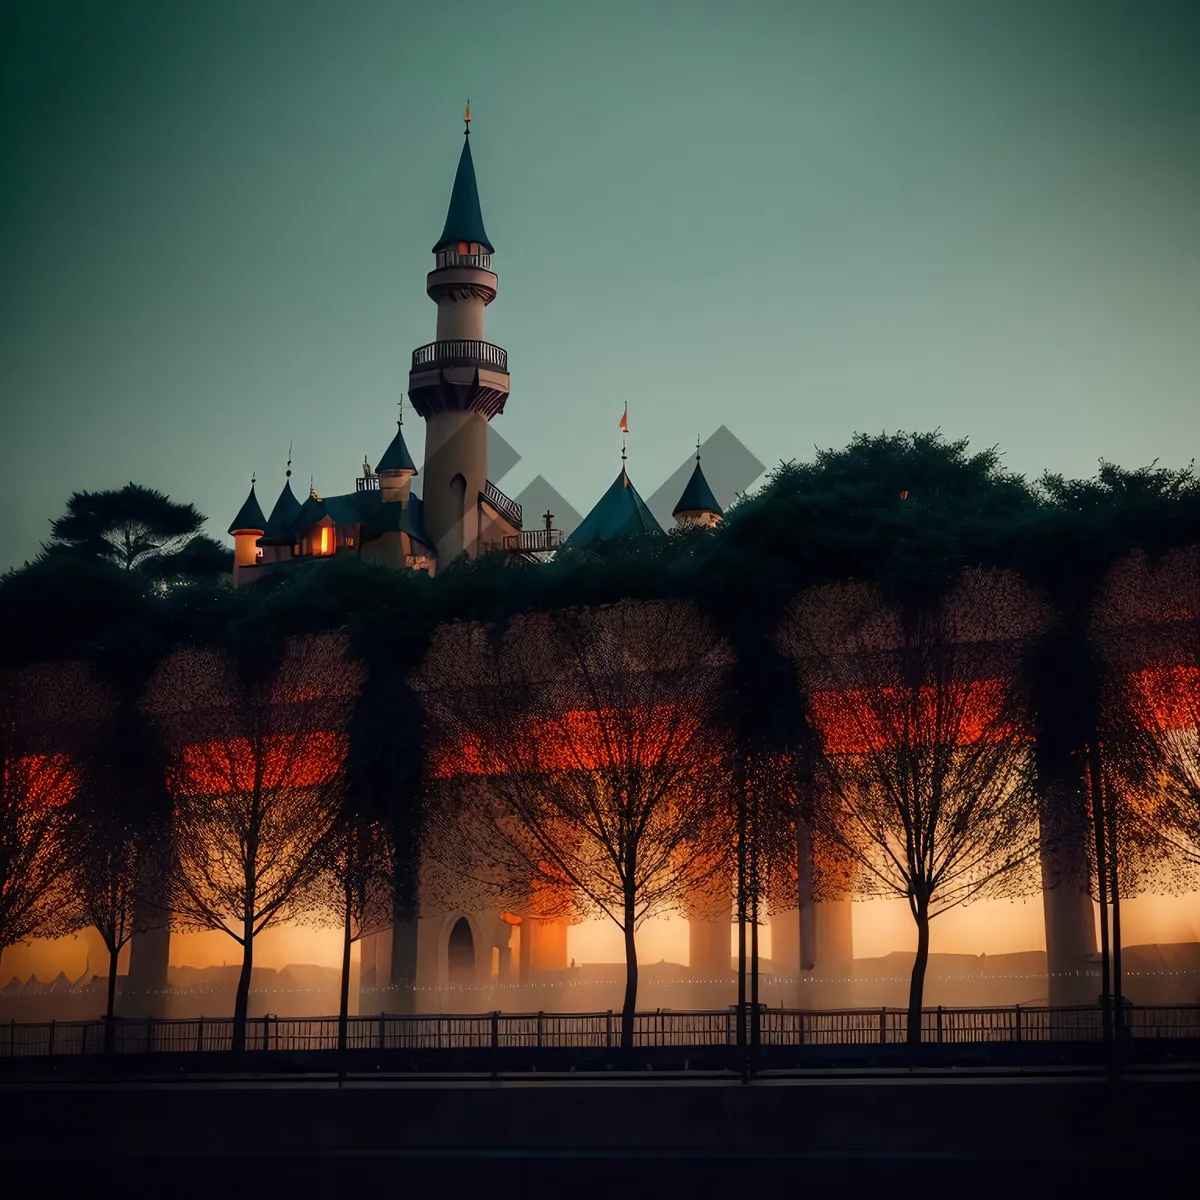 Picture of Majestic Minaret: Iconic Islamic Architecture